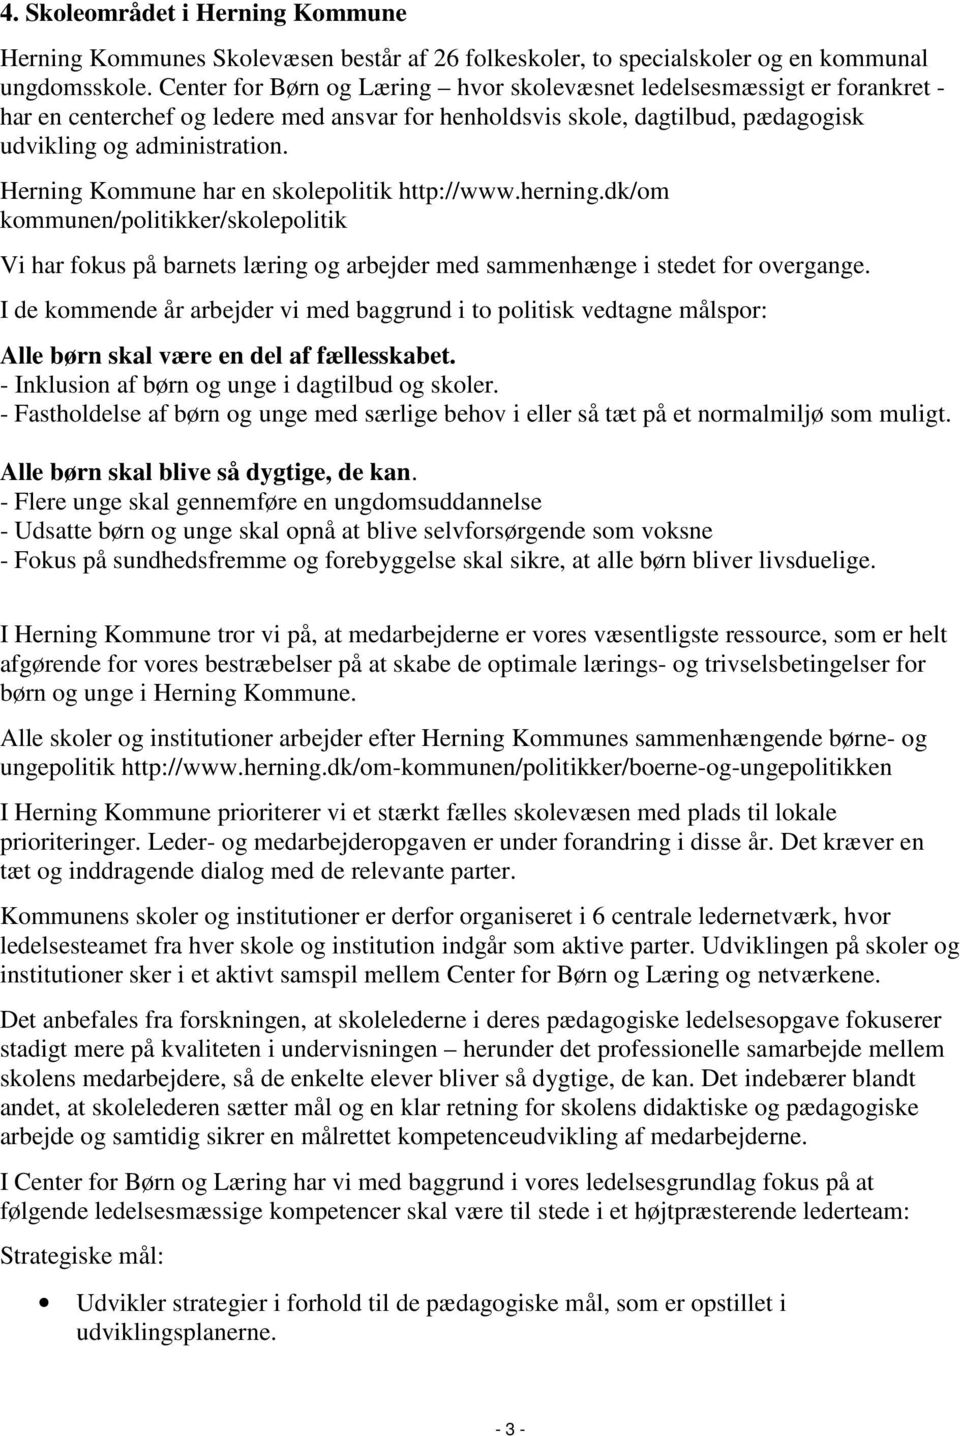 Herning Kommune har en skolepolitik http://www.herning.dk/om kommunen/politikker/skolepolitik Vi har fokus på barnets læring og arbejder med sammenhænge i stedet for overgange.